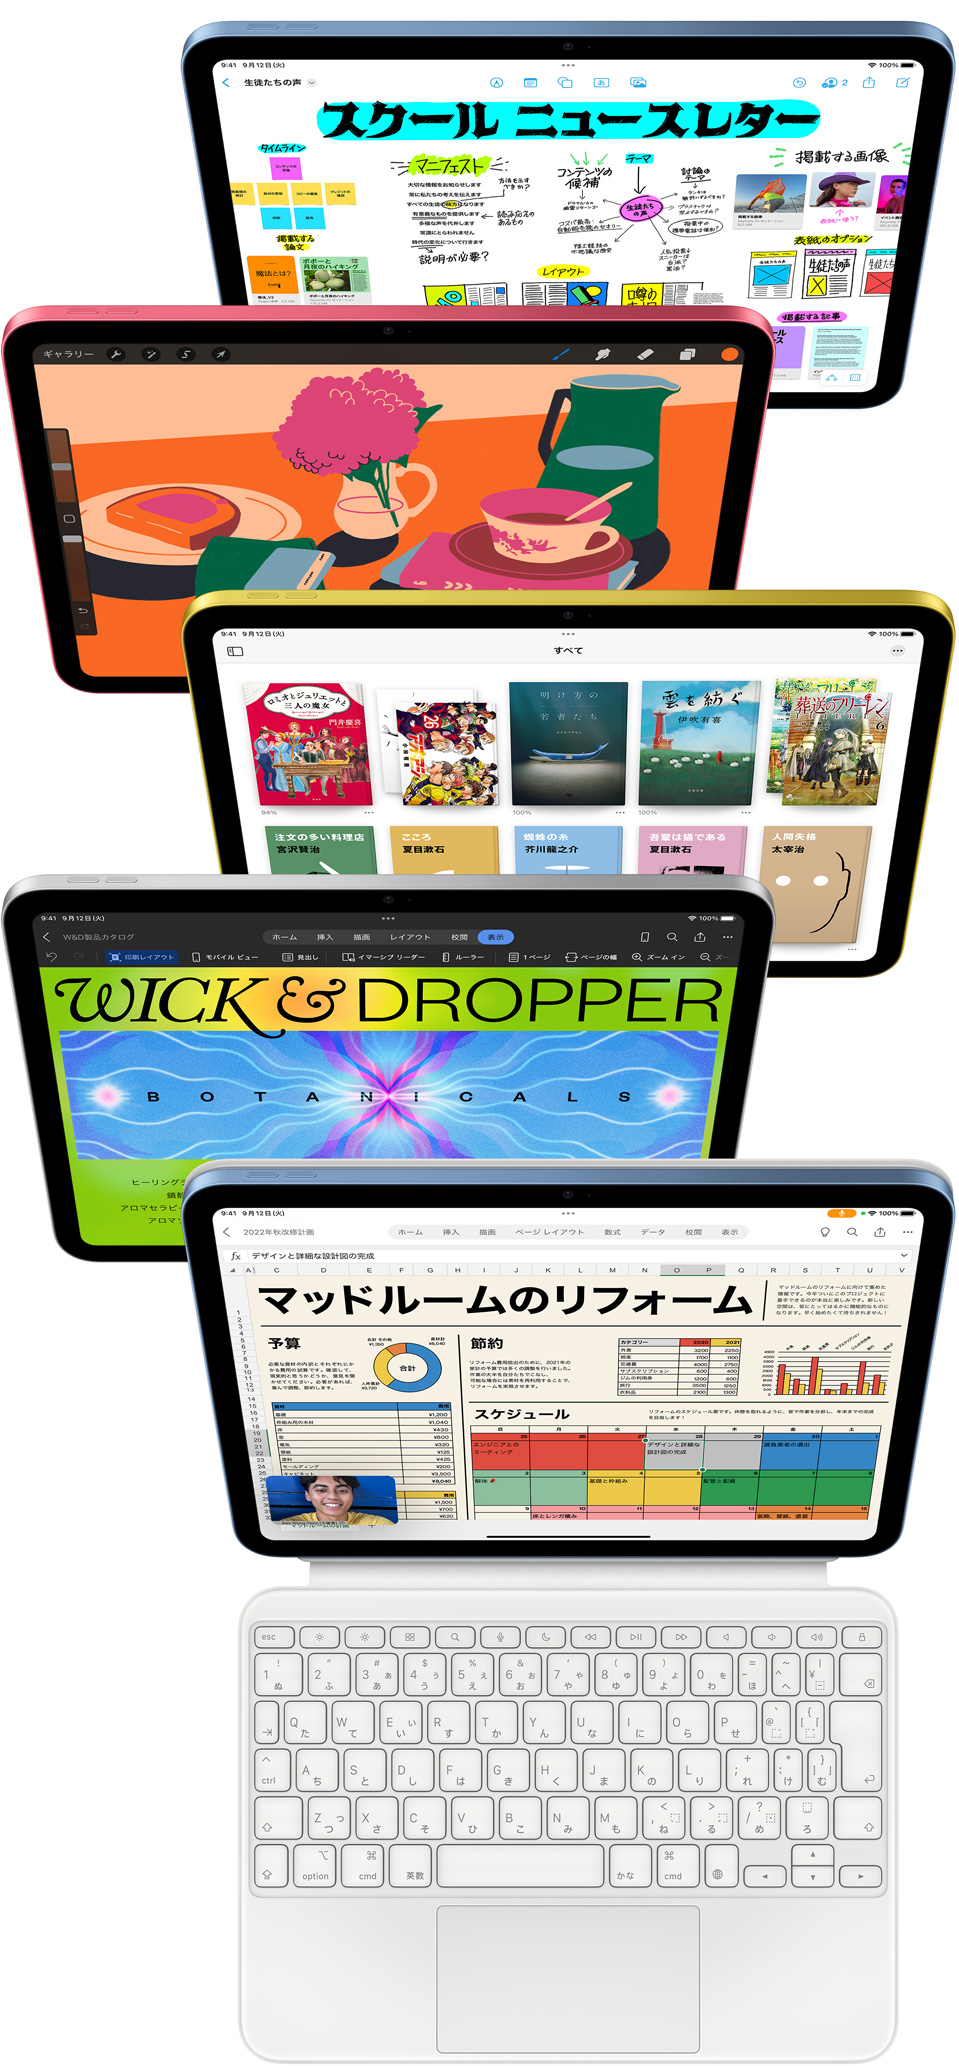 正面を向いたiPadの画面に様々なApple製アプリやApp Storeのアプリが表示されている。